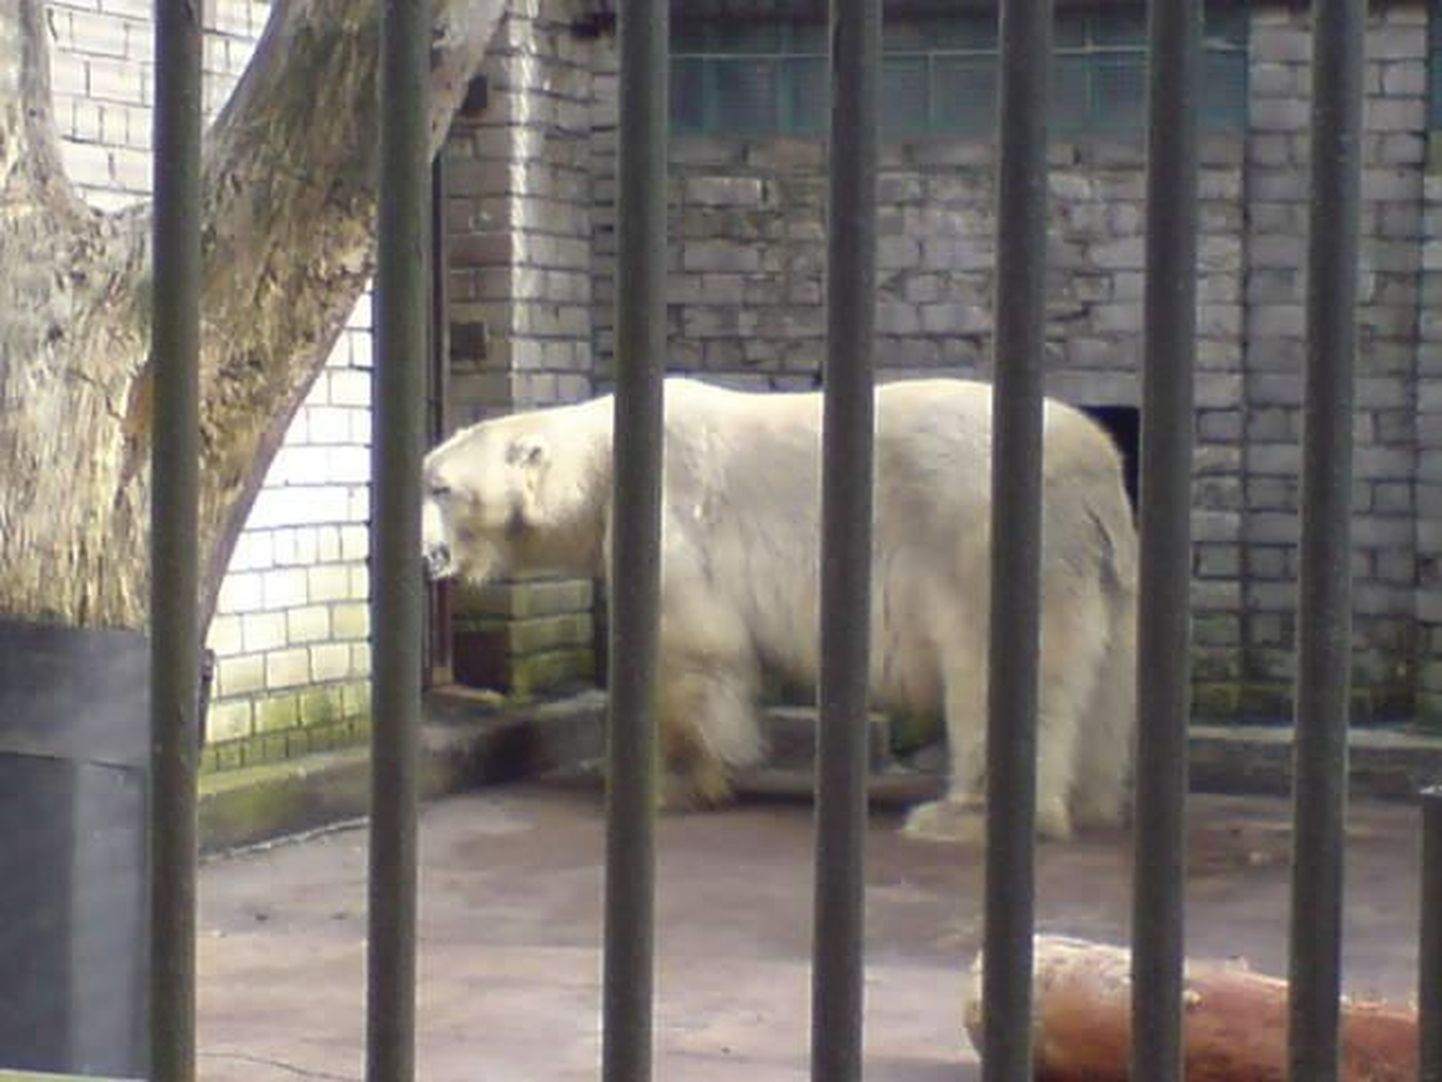 Isane jääkaru Nord jõudis Tallinna Loomaaeda.